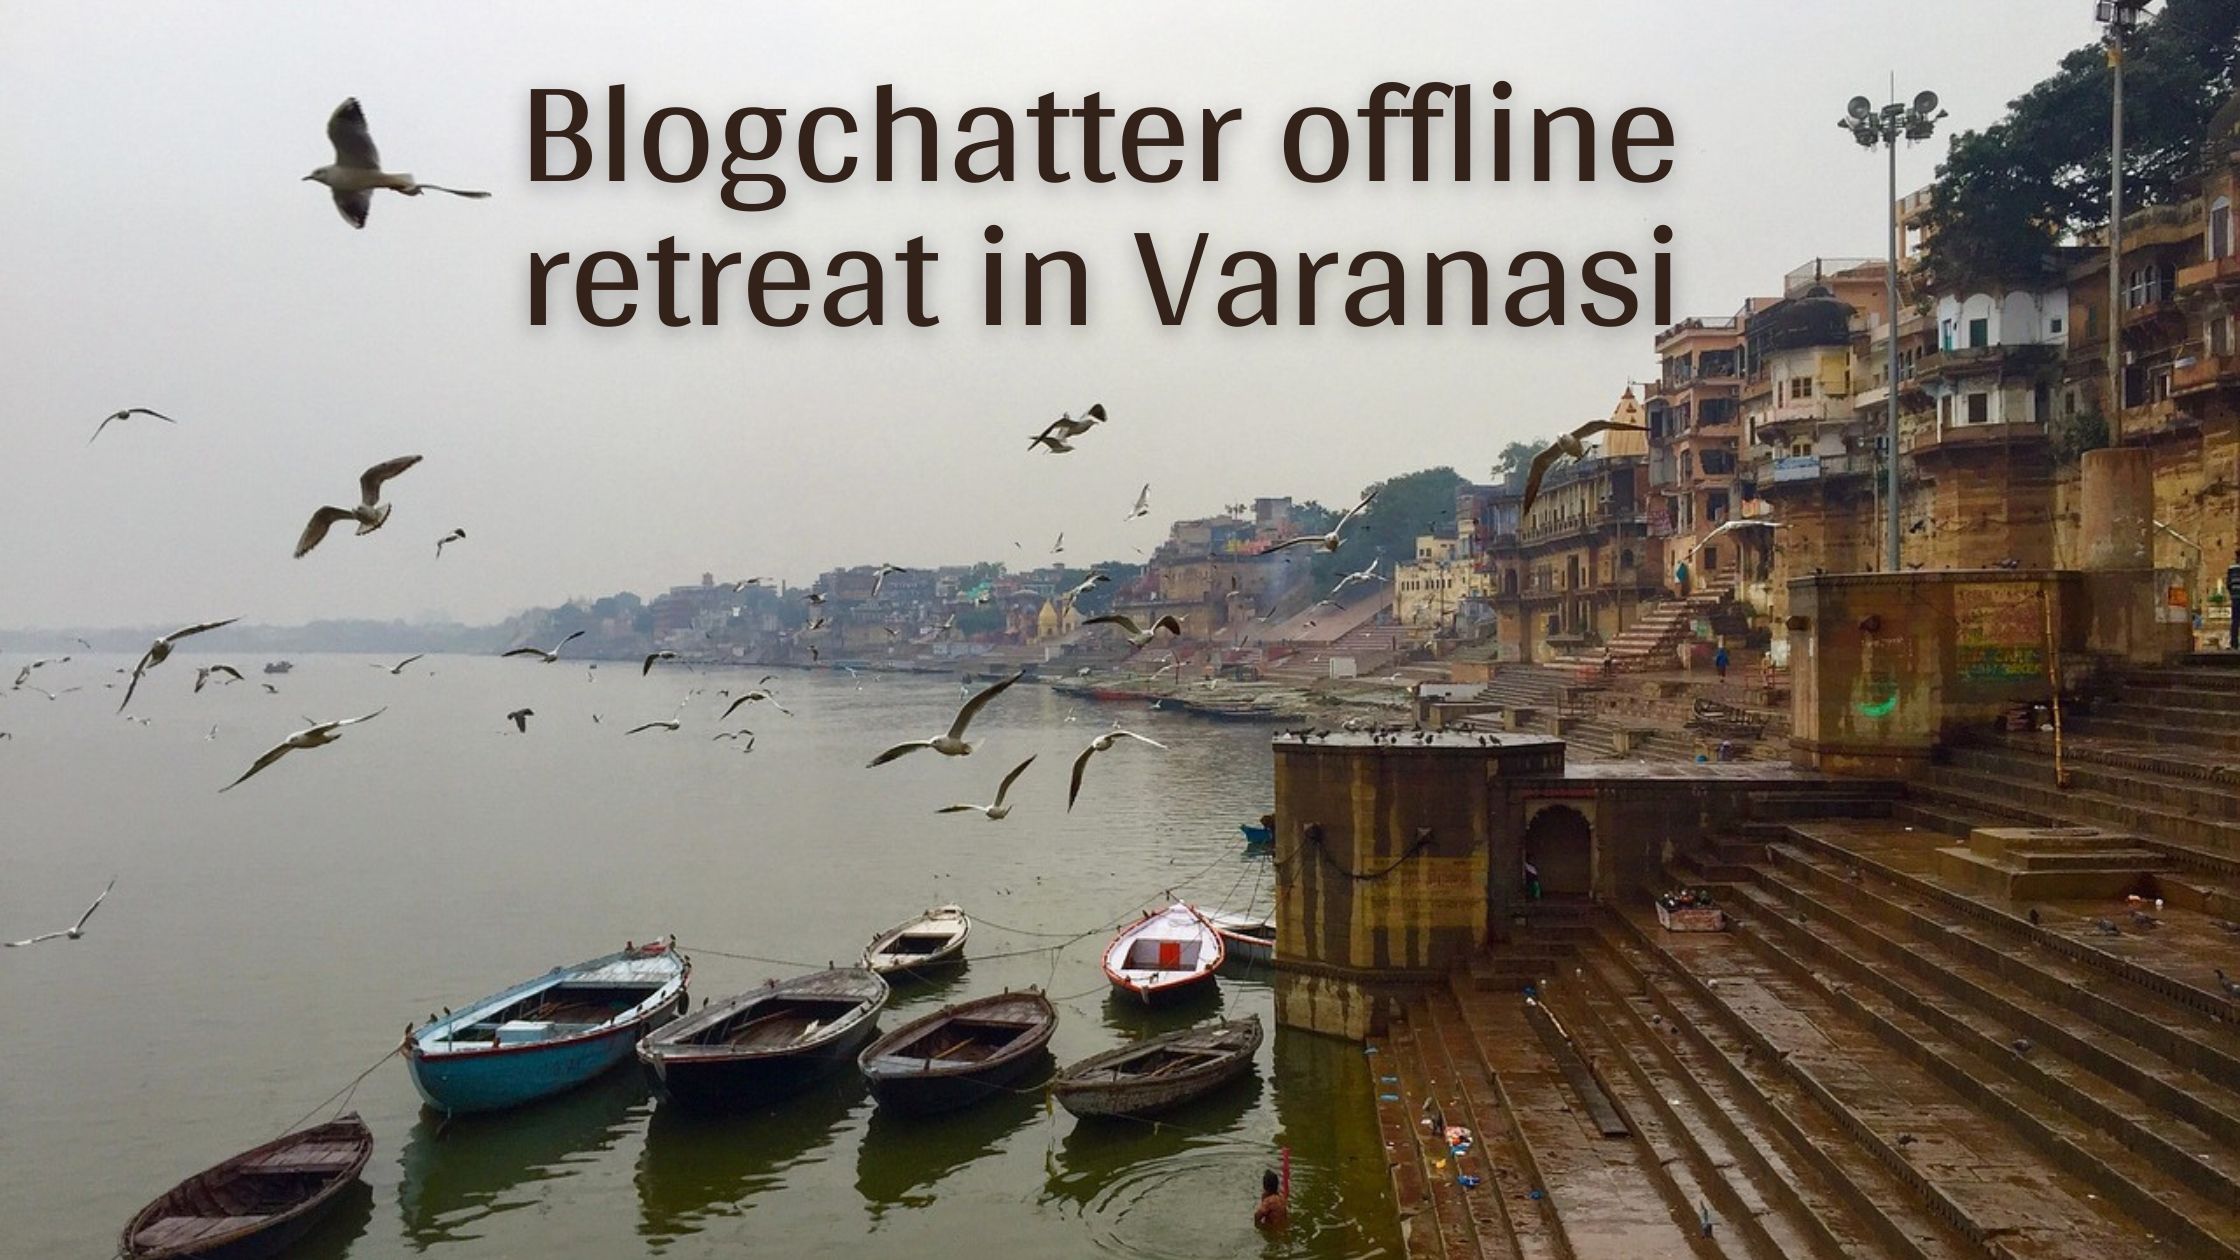 Blogchatter offline retreat in Varanasi